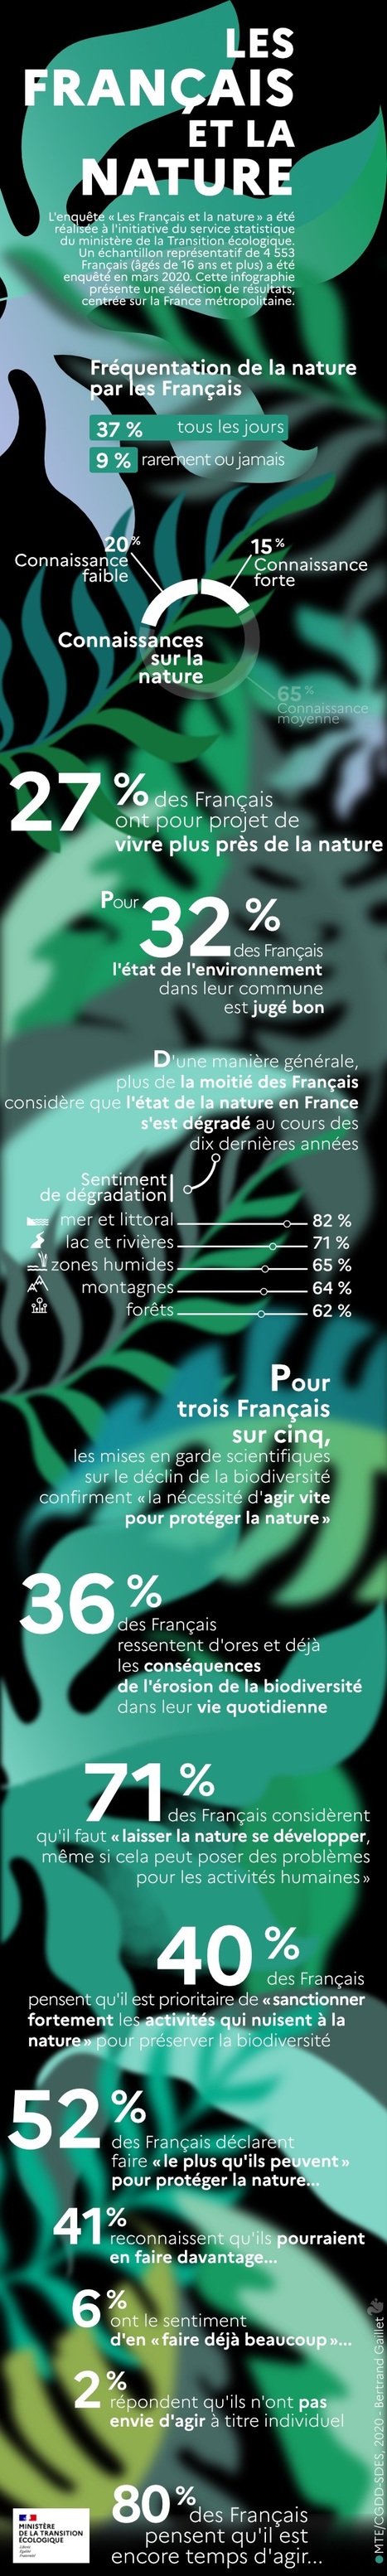 Enquête "Les Français et la nature" : infographie et application de visualisation des données | Insect Archive | Scoop.it